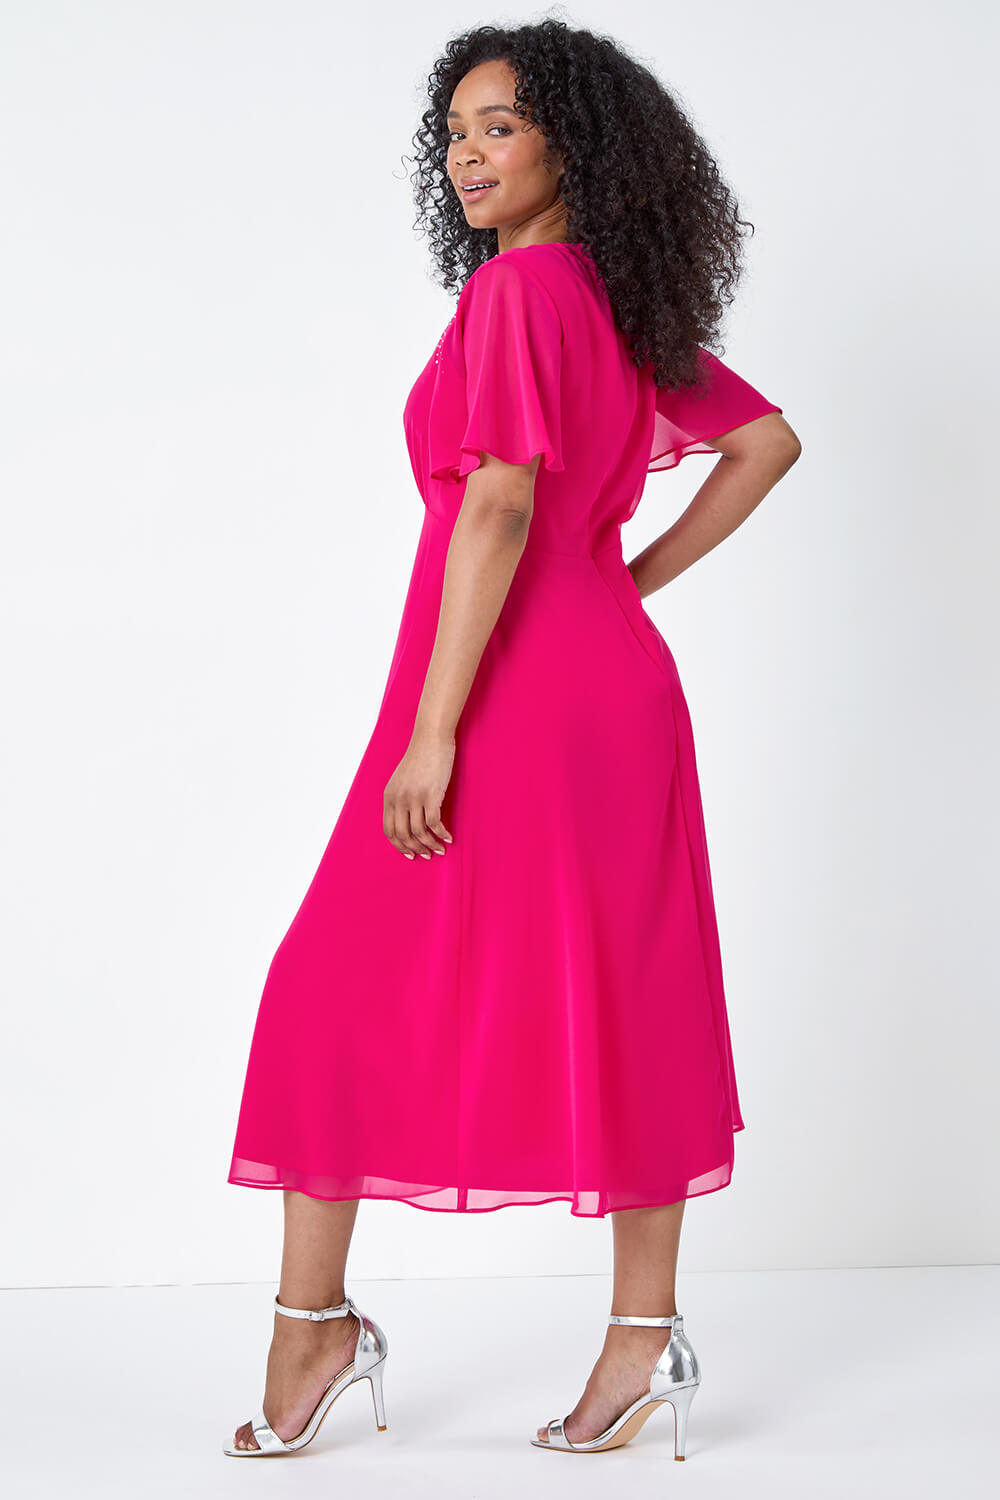 PINK Petite Shimmer Pleated Chiffon Midi Dress, Image 3 of 5